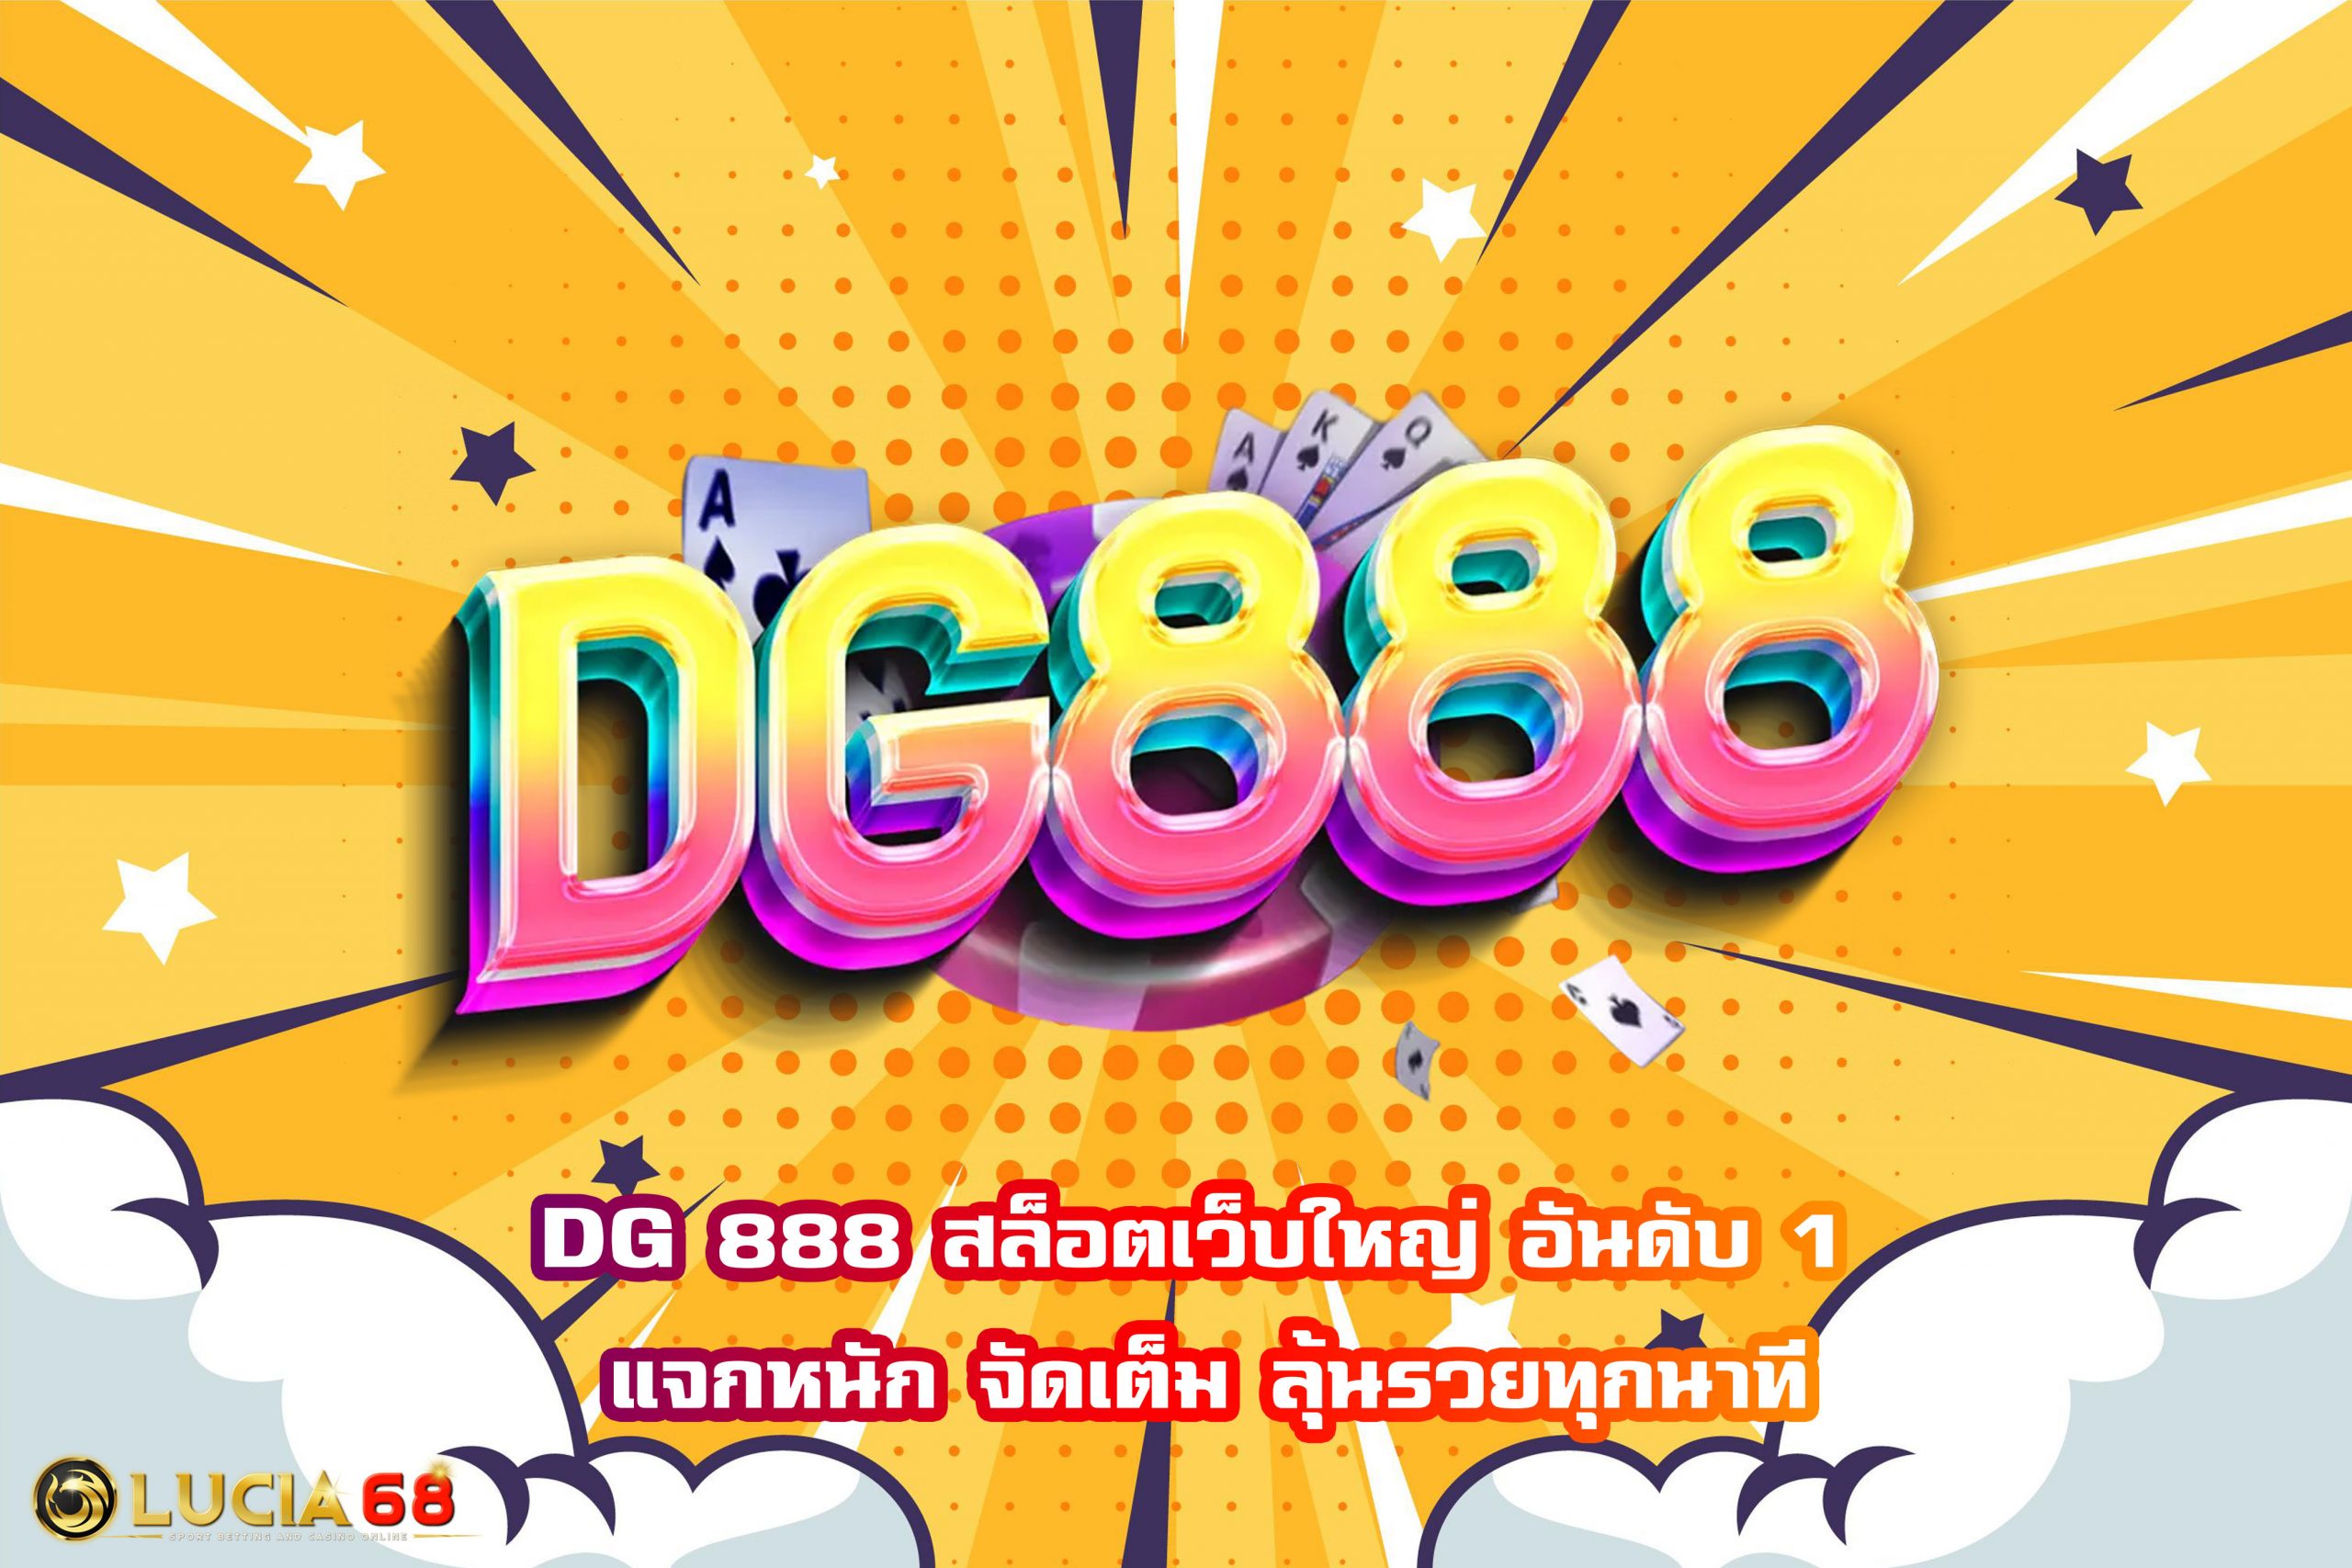 DG 888 สล็อตเว็บใหญ่ อันดับ 1 แจกหนัก จัดเต็ม ลุ้นรวยทุกนาที